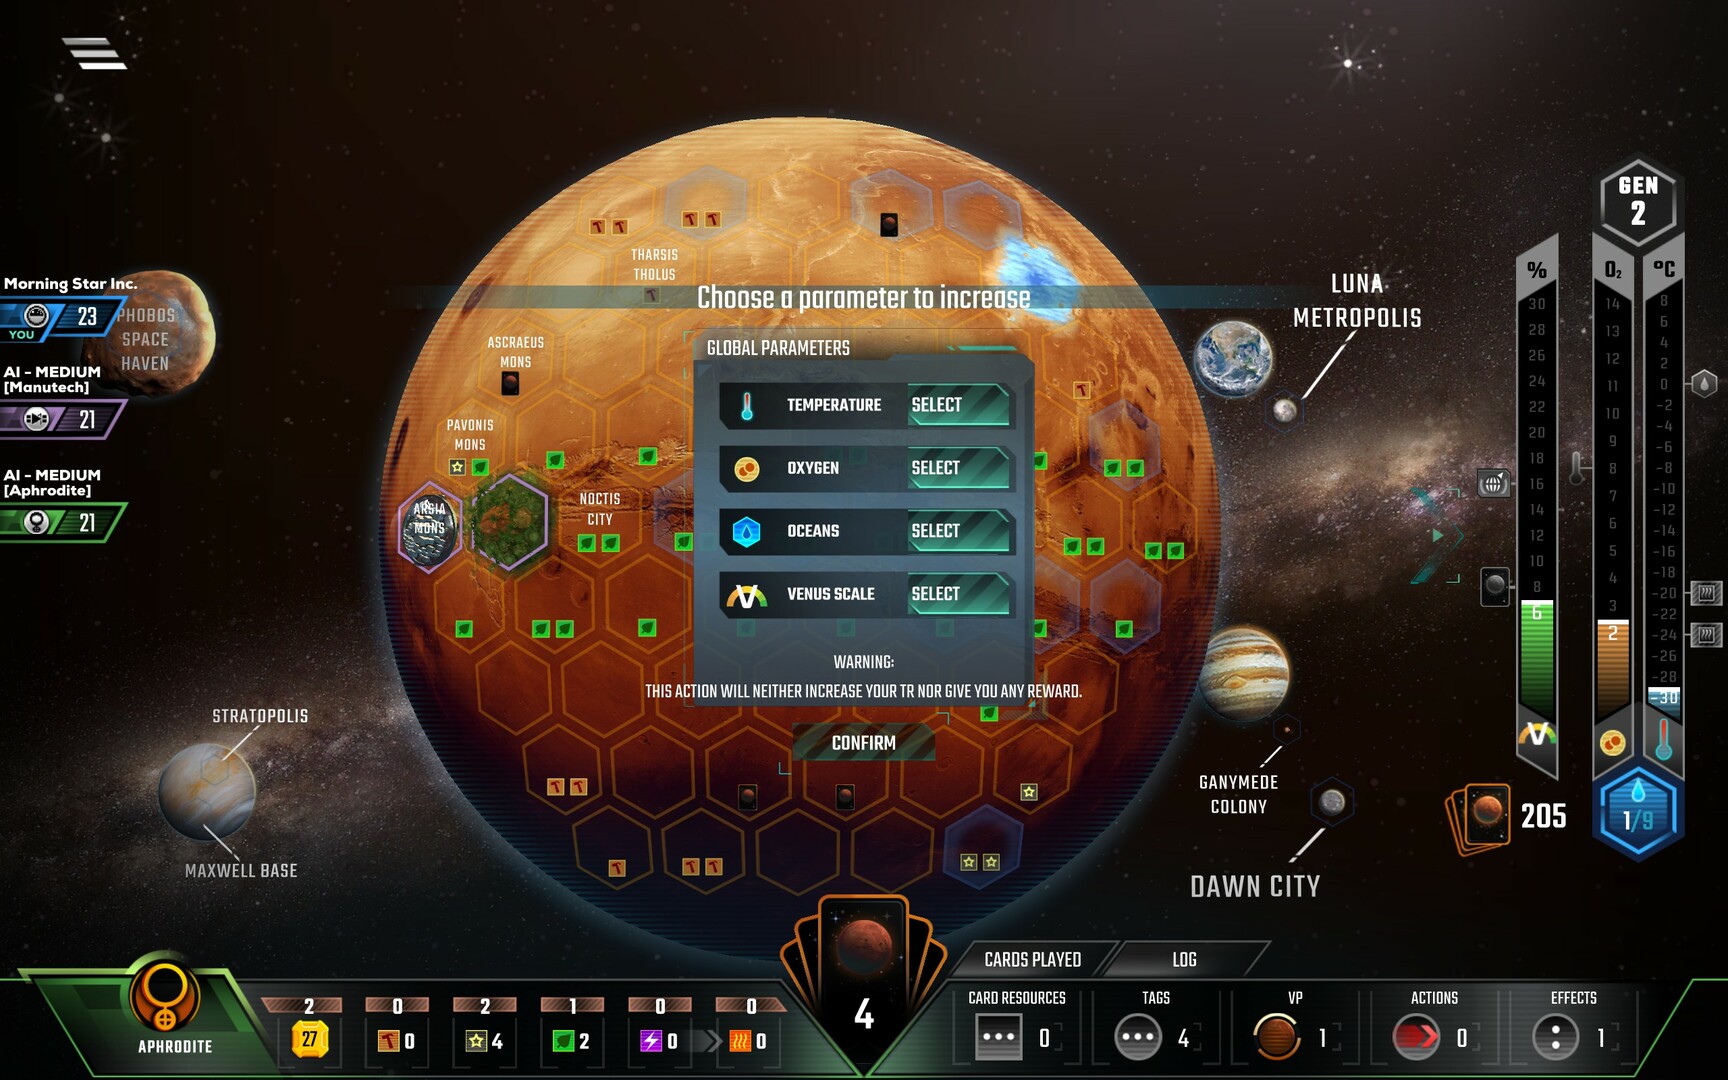 Terraforming Mars: Venus Next - Fair Game